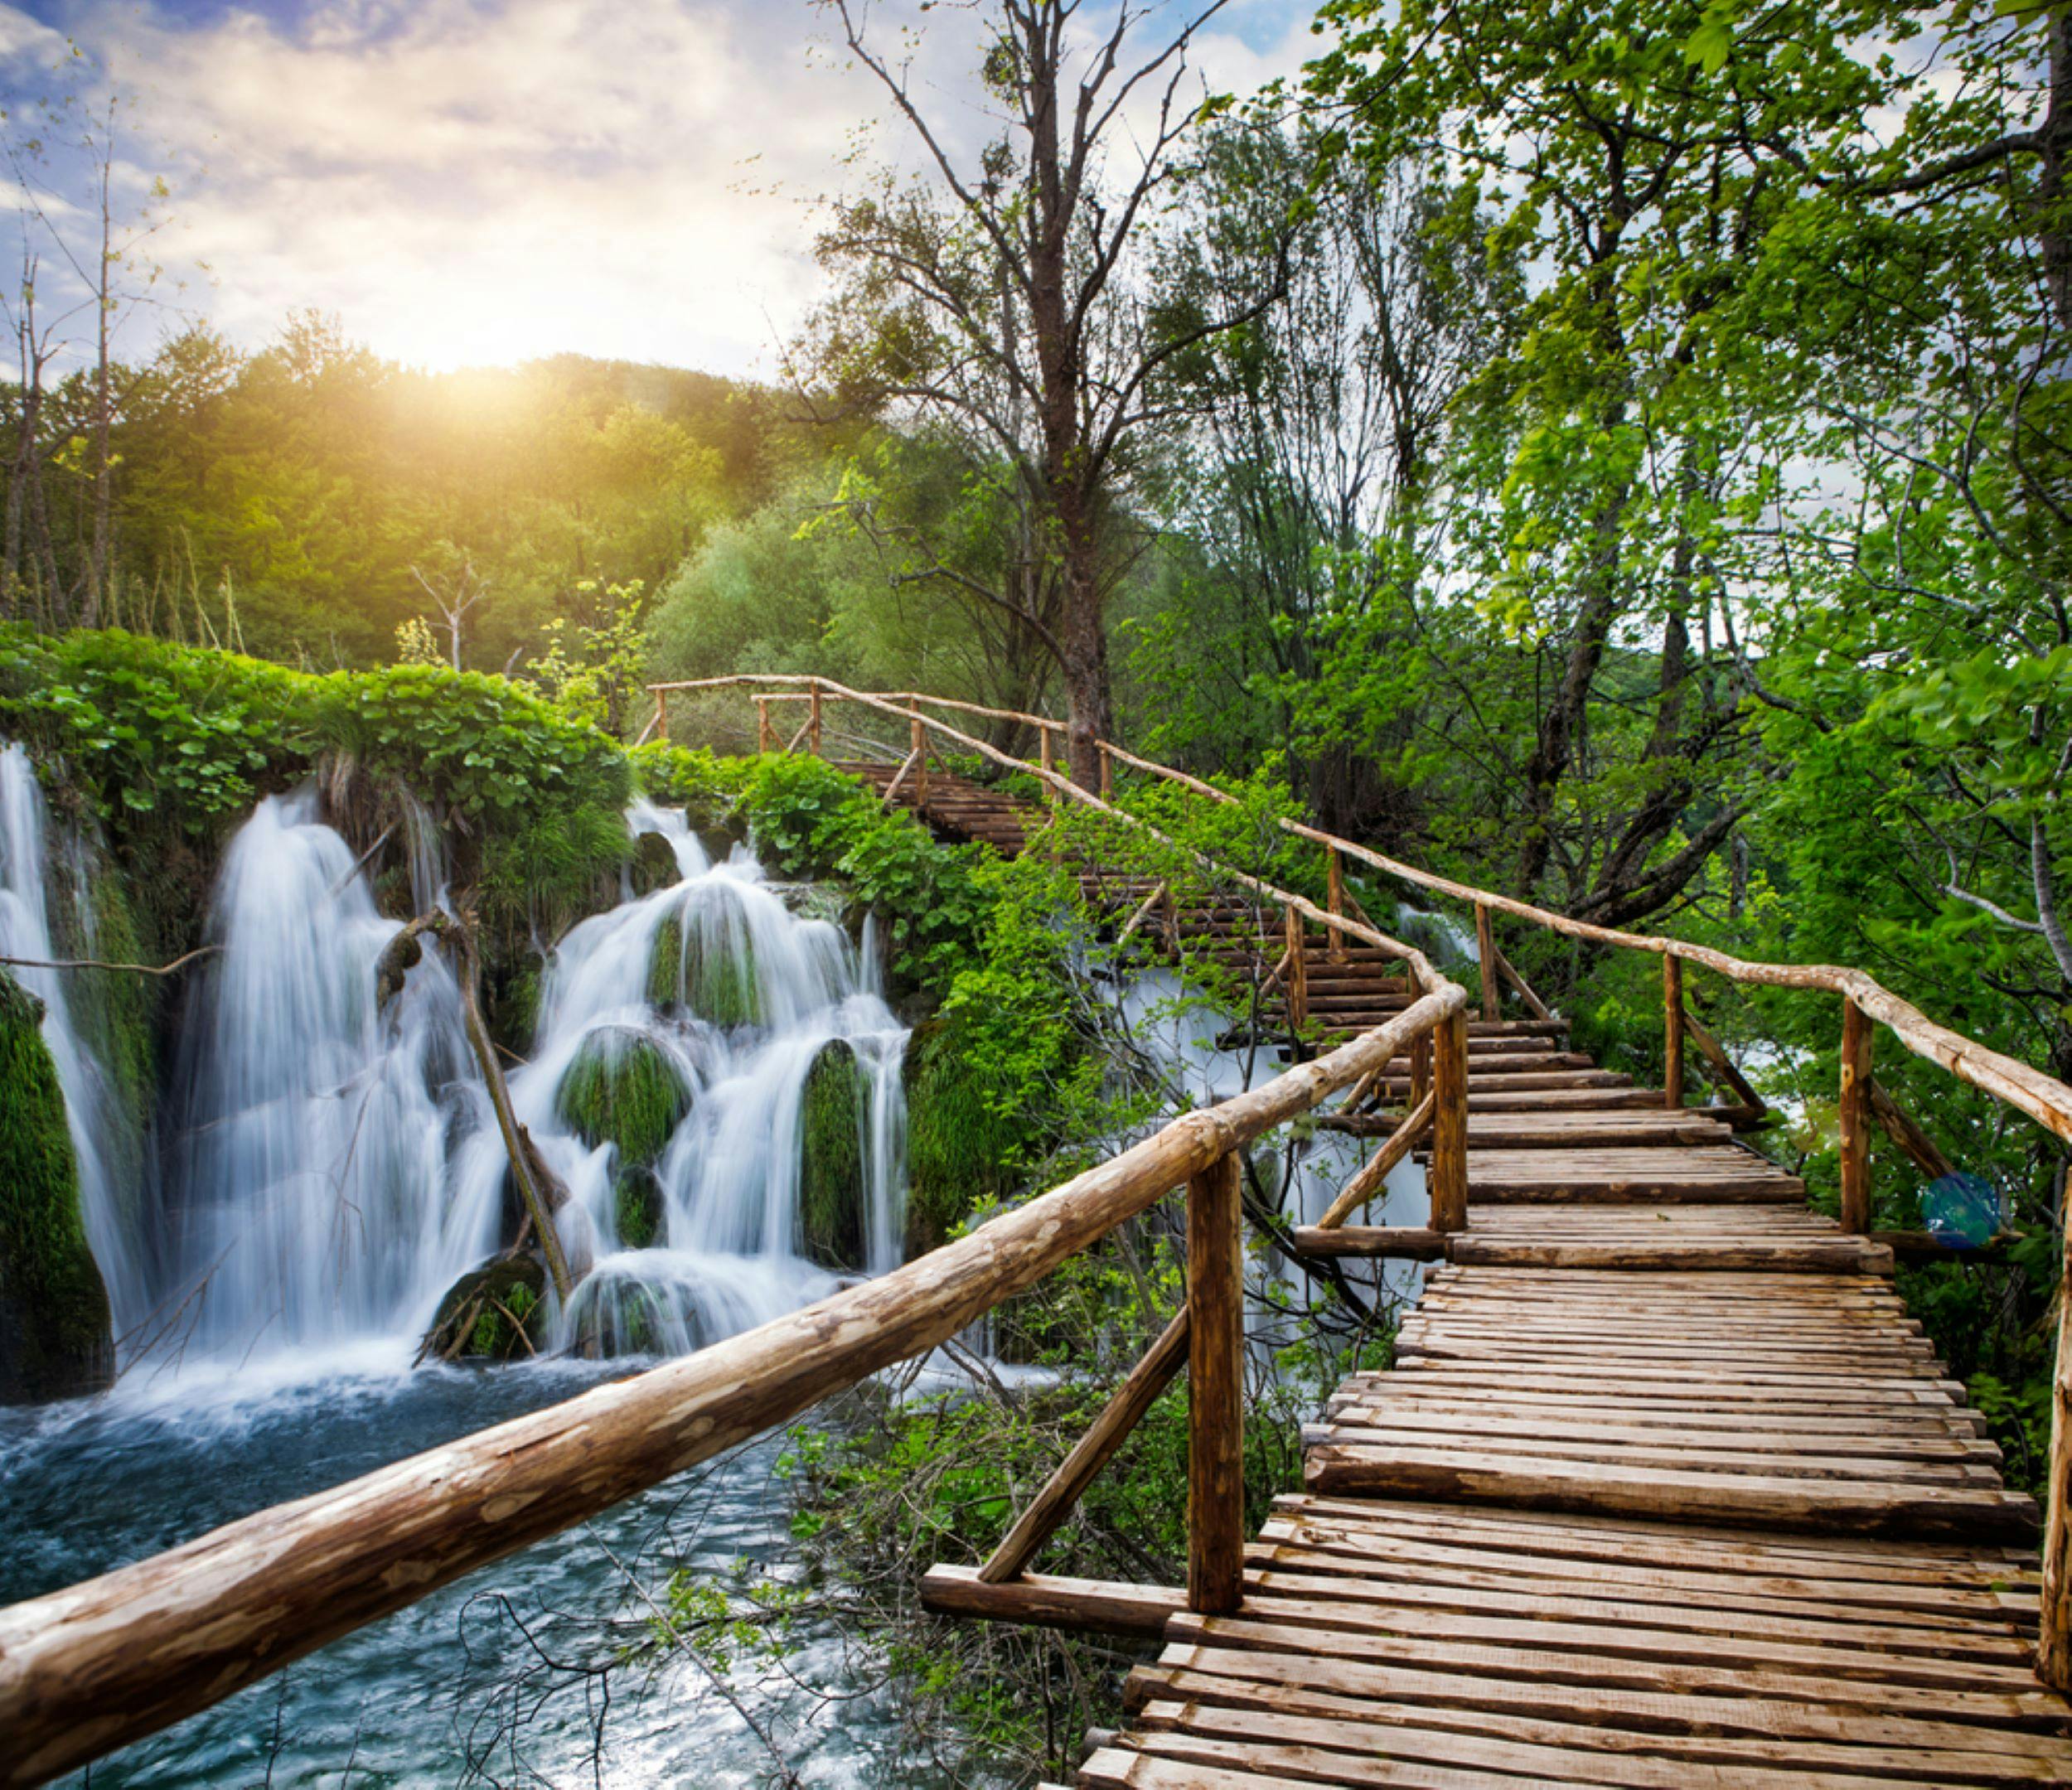 Gita di un giorno al Parco nazionale dei laghi di Plitvice dalla costa slovena